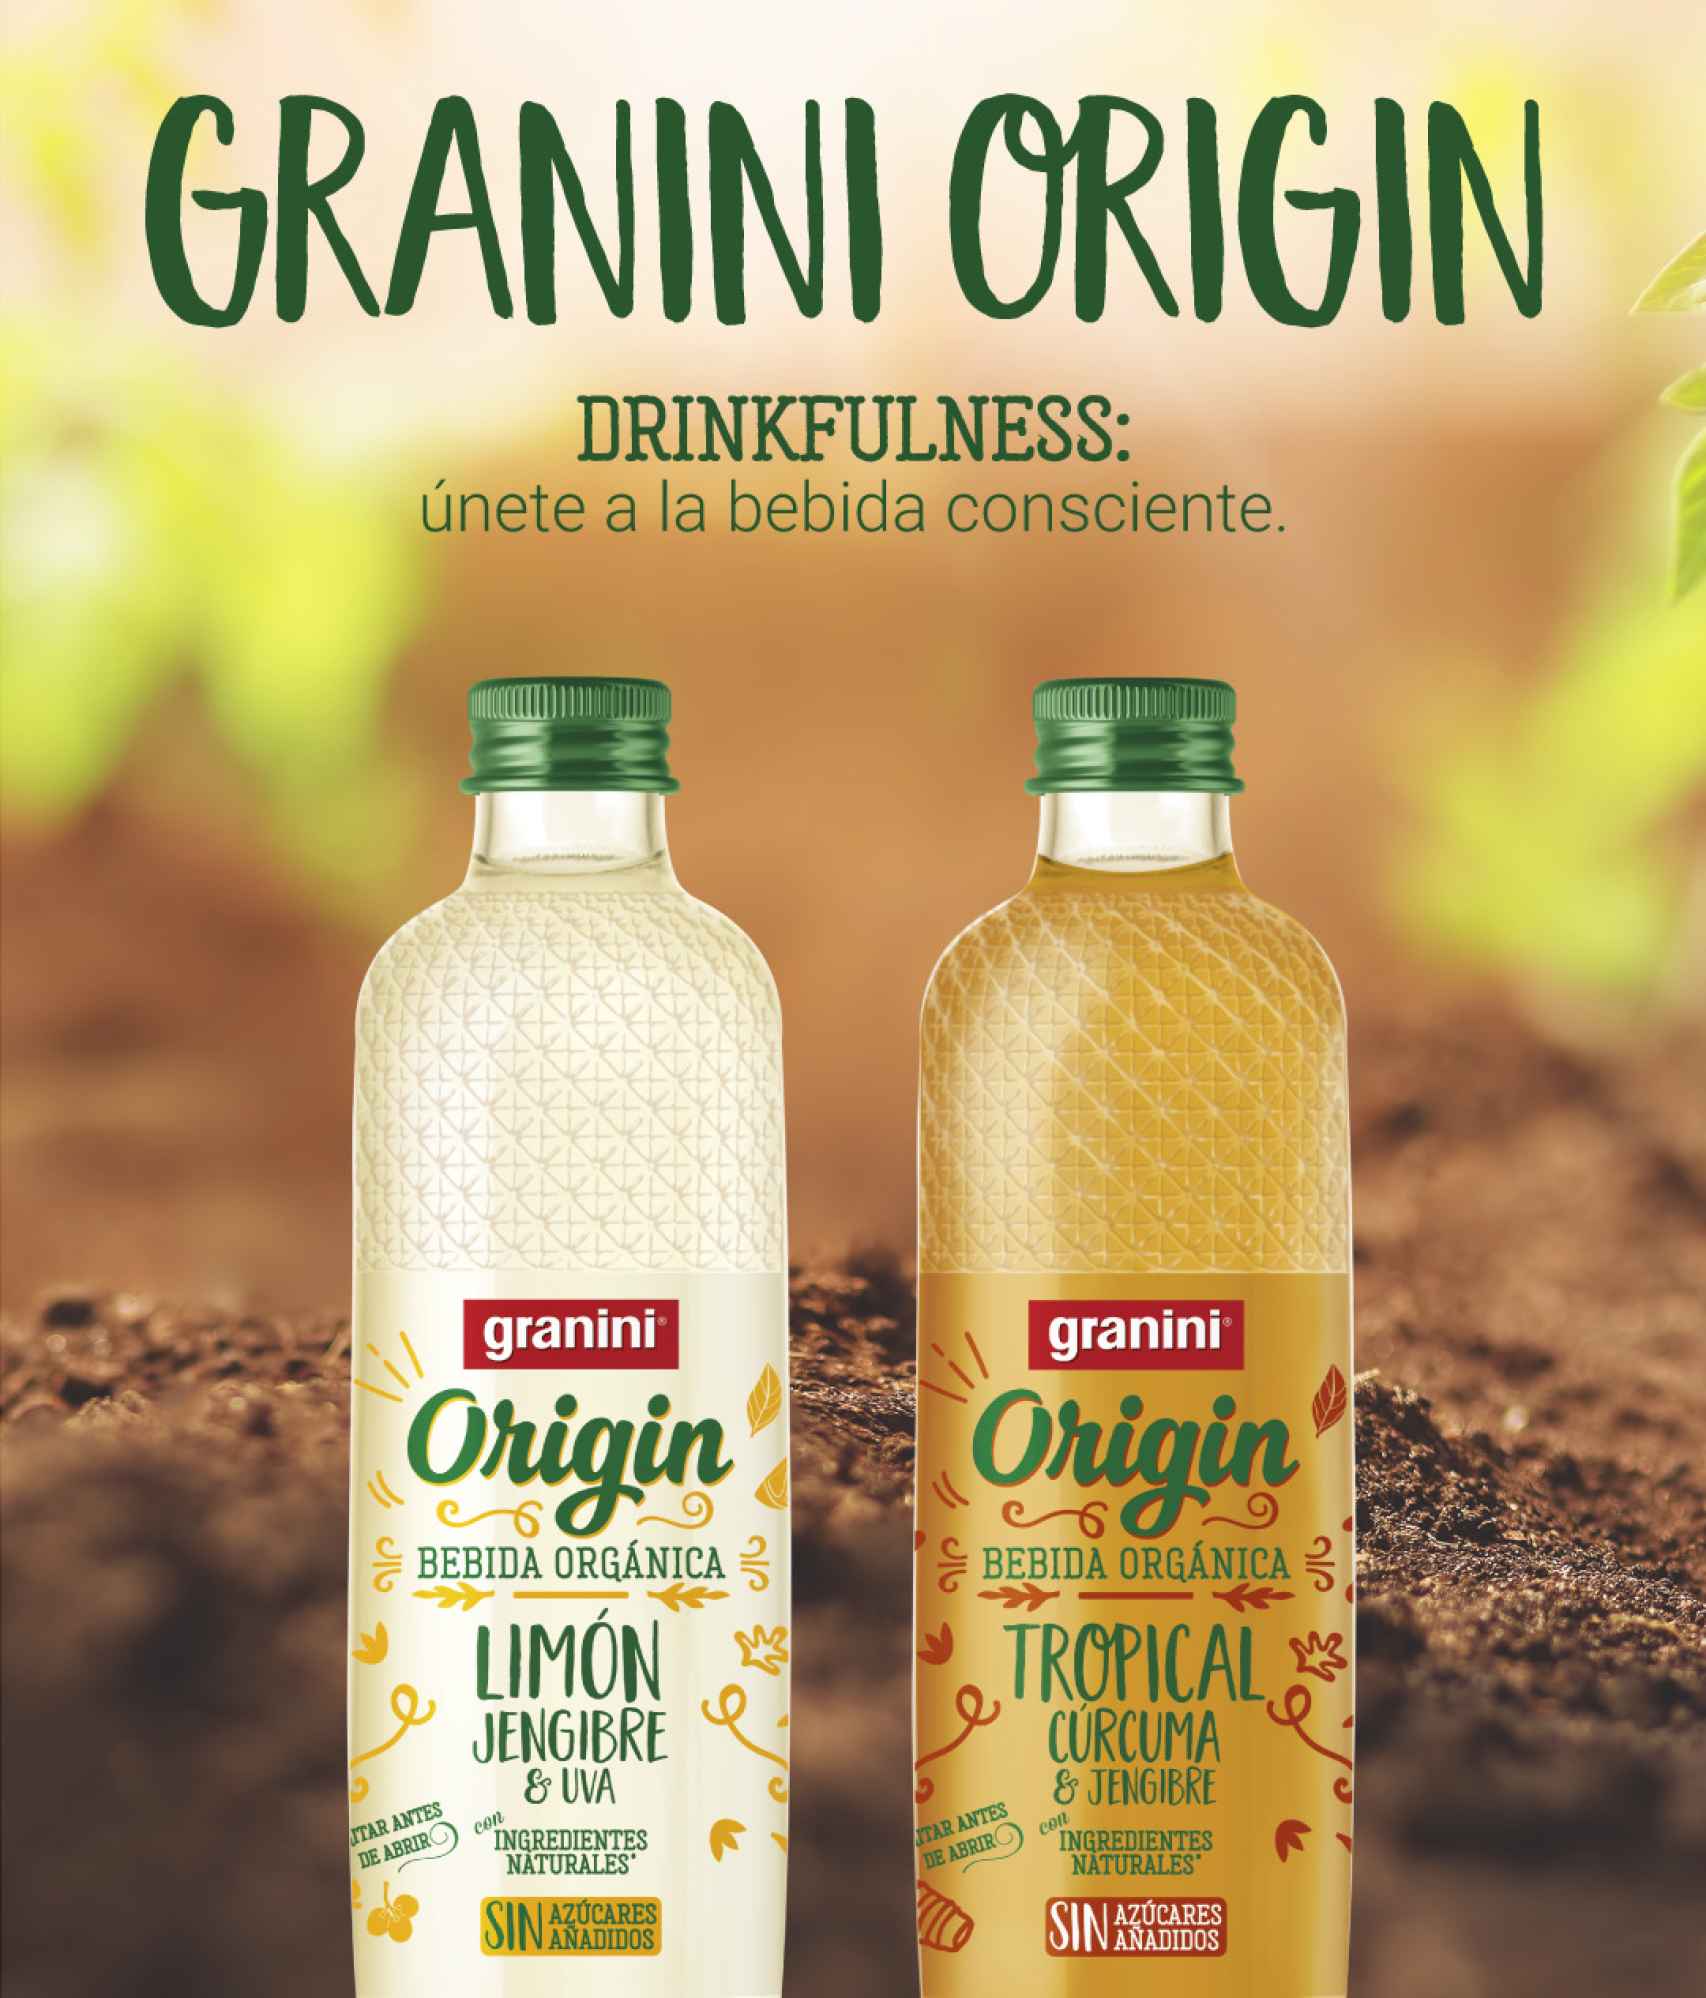 granini Origin